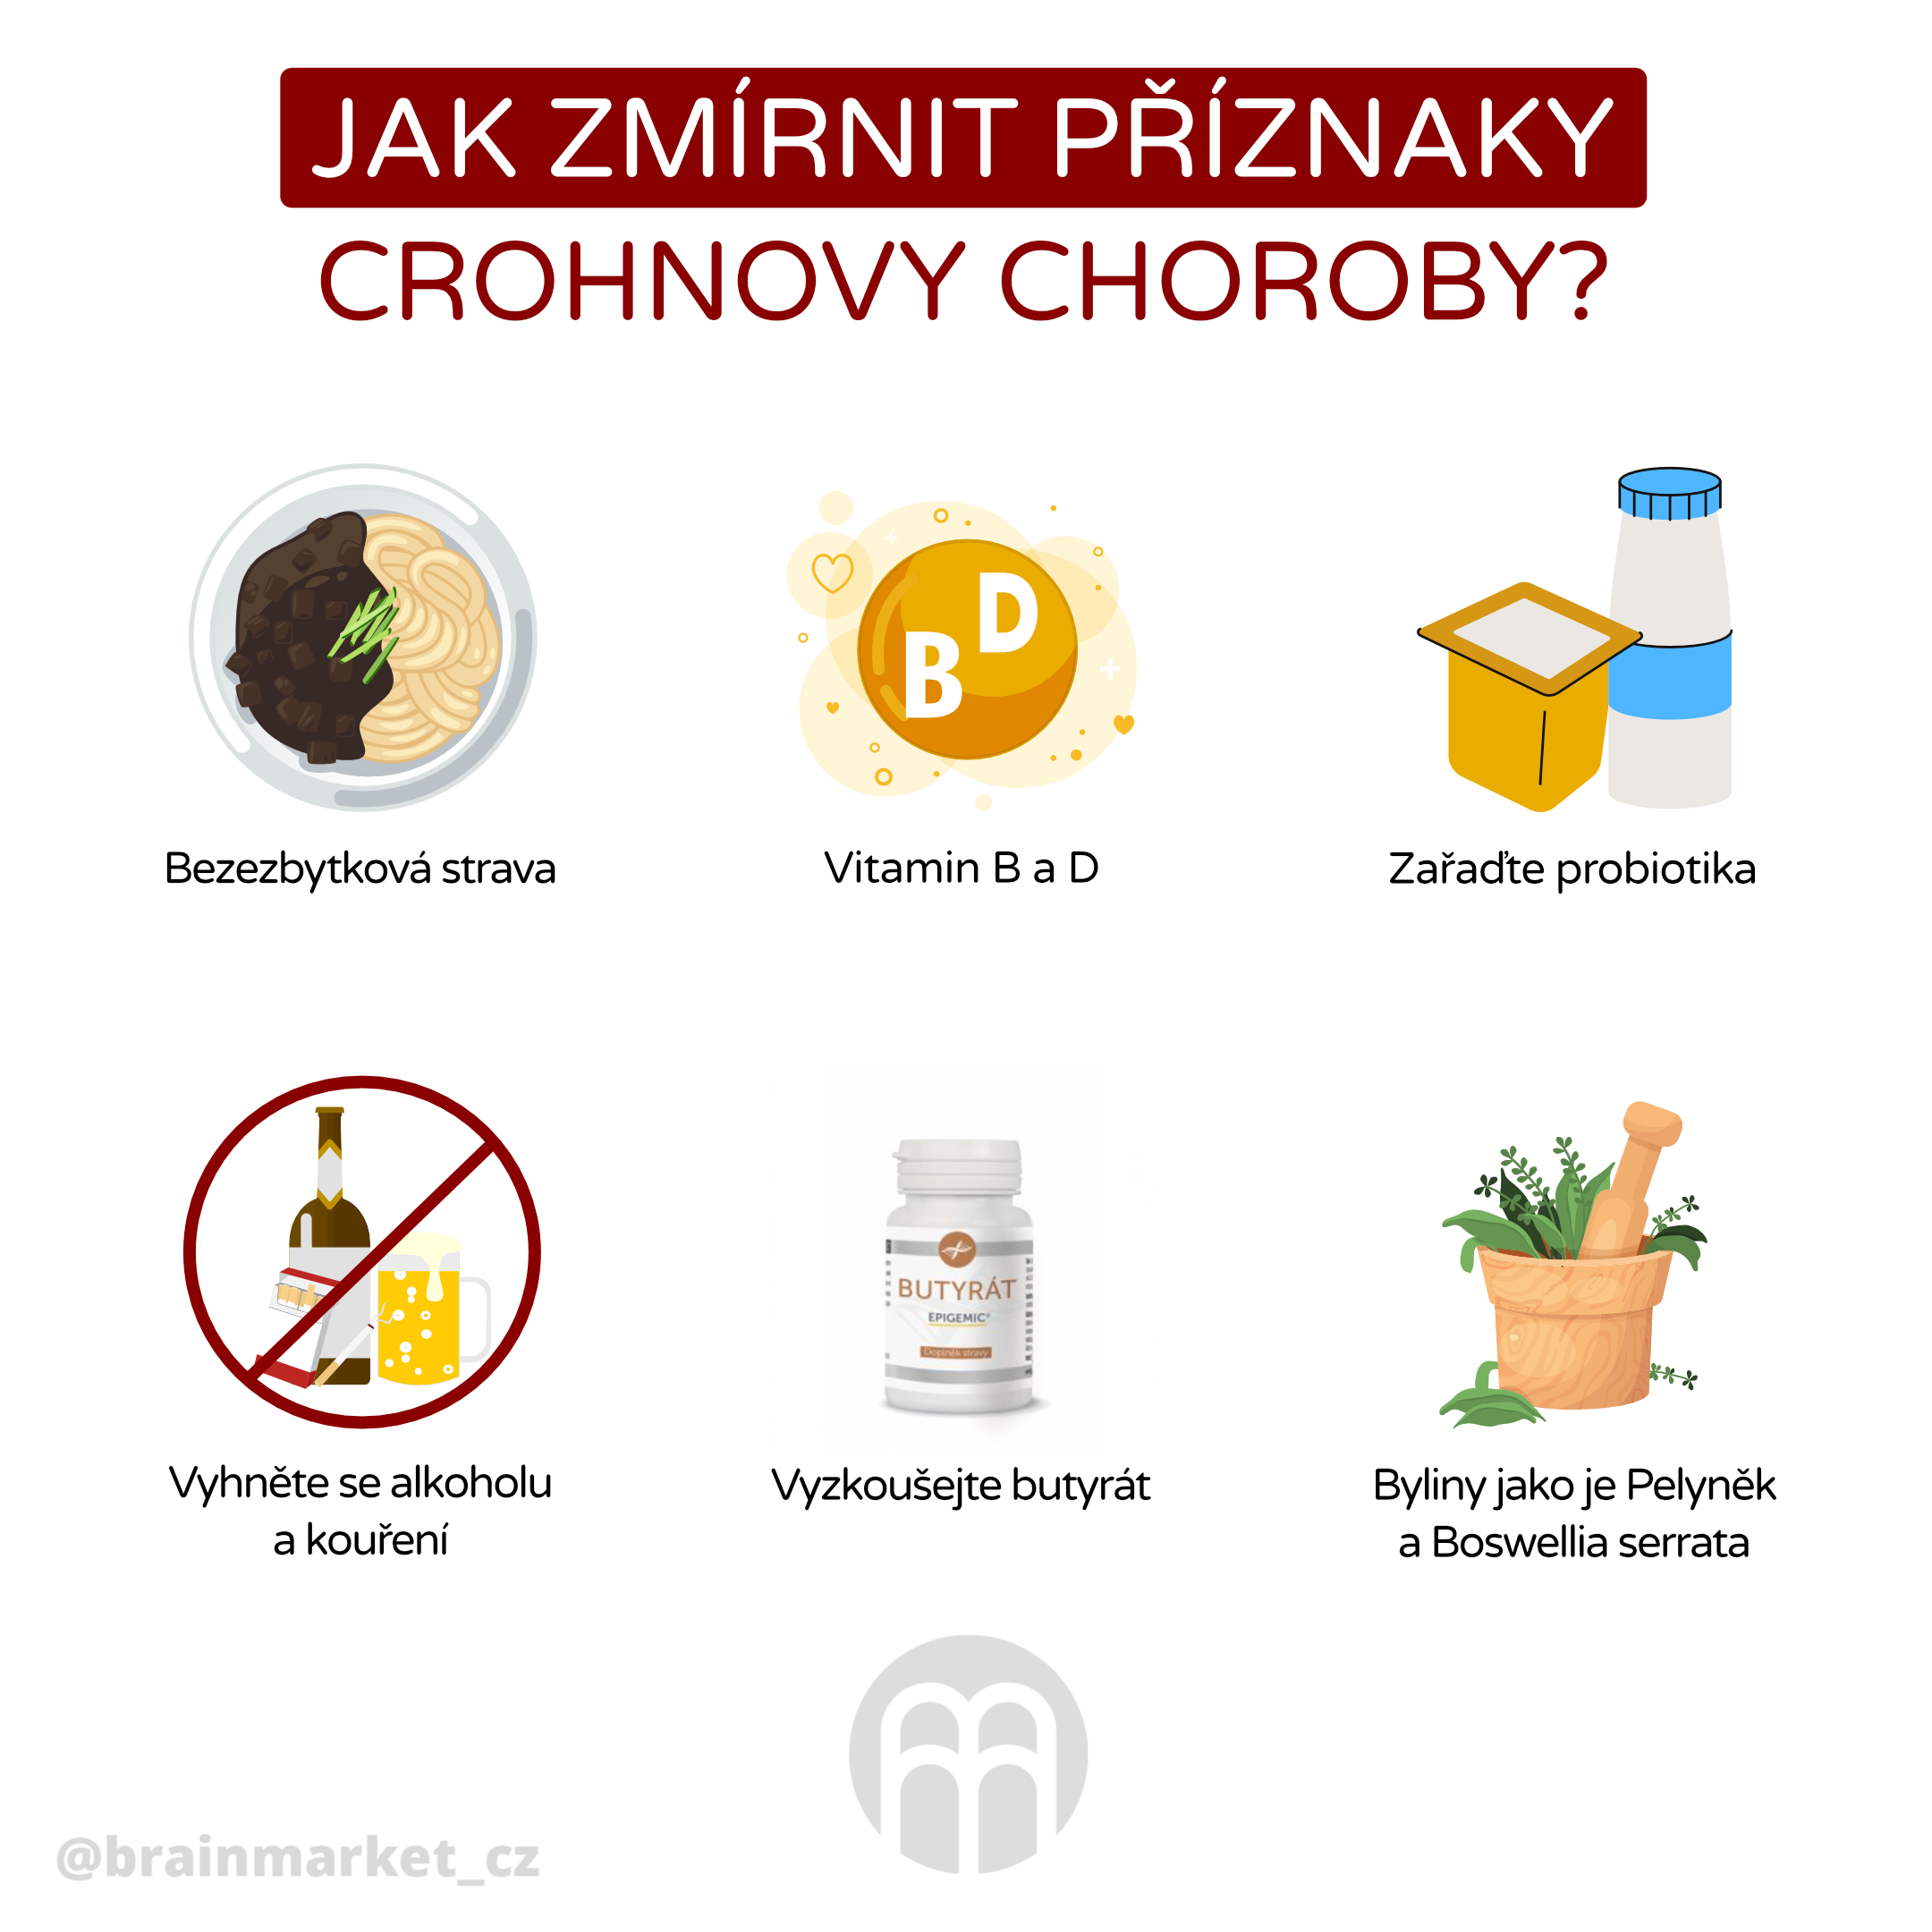 jak zmirnit priznaky crohnovy choroby_infografika_cz